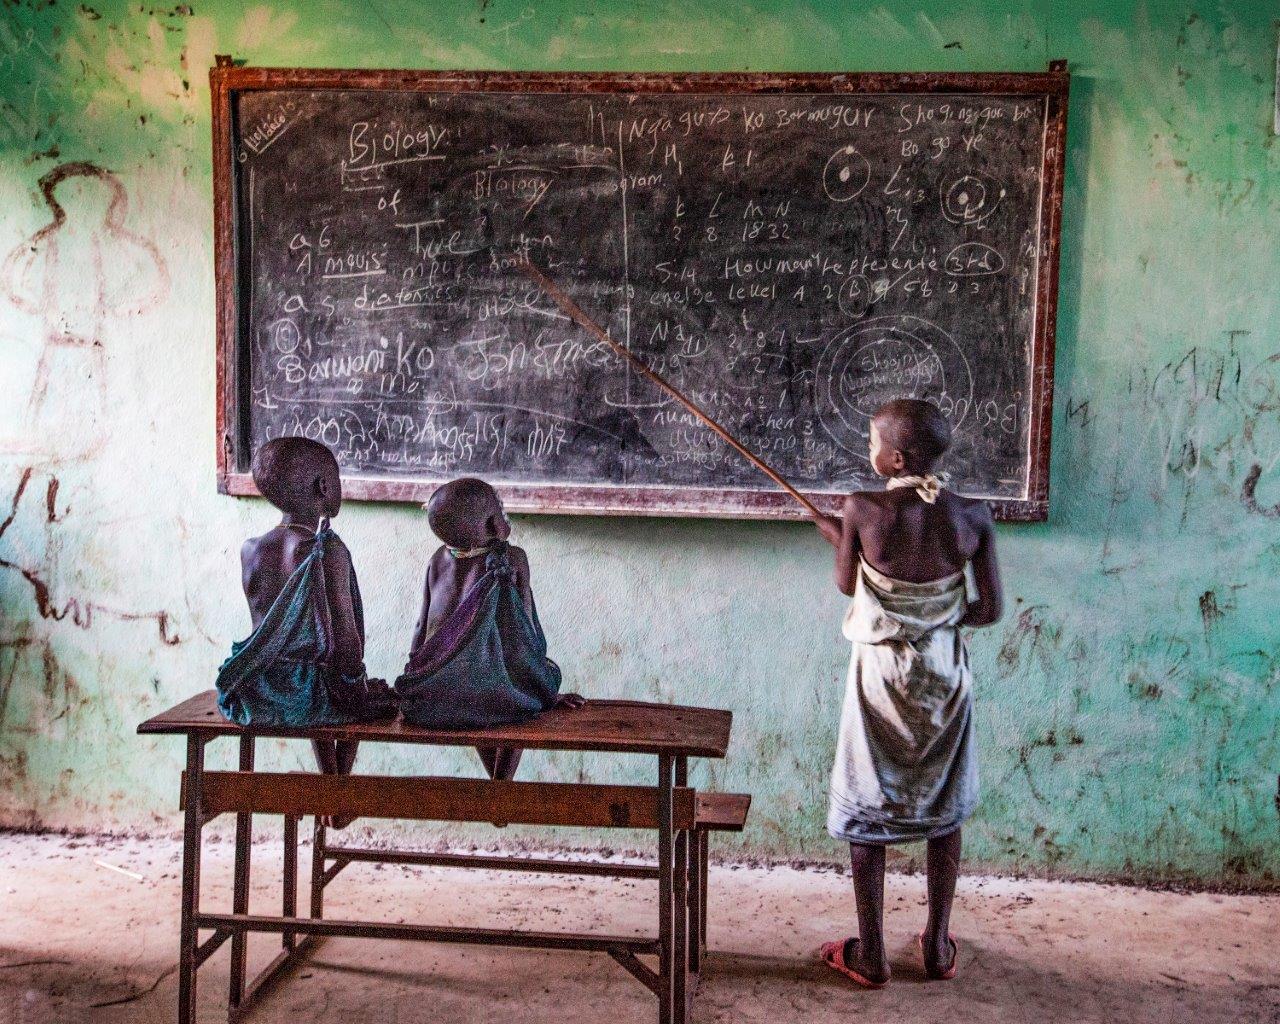 Zdjęcie konkursowe z wystawy pod tytułem Dziecko - Trójka dzieci przy szkolnej tablicy